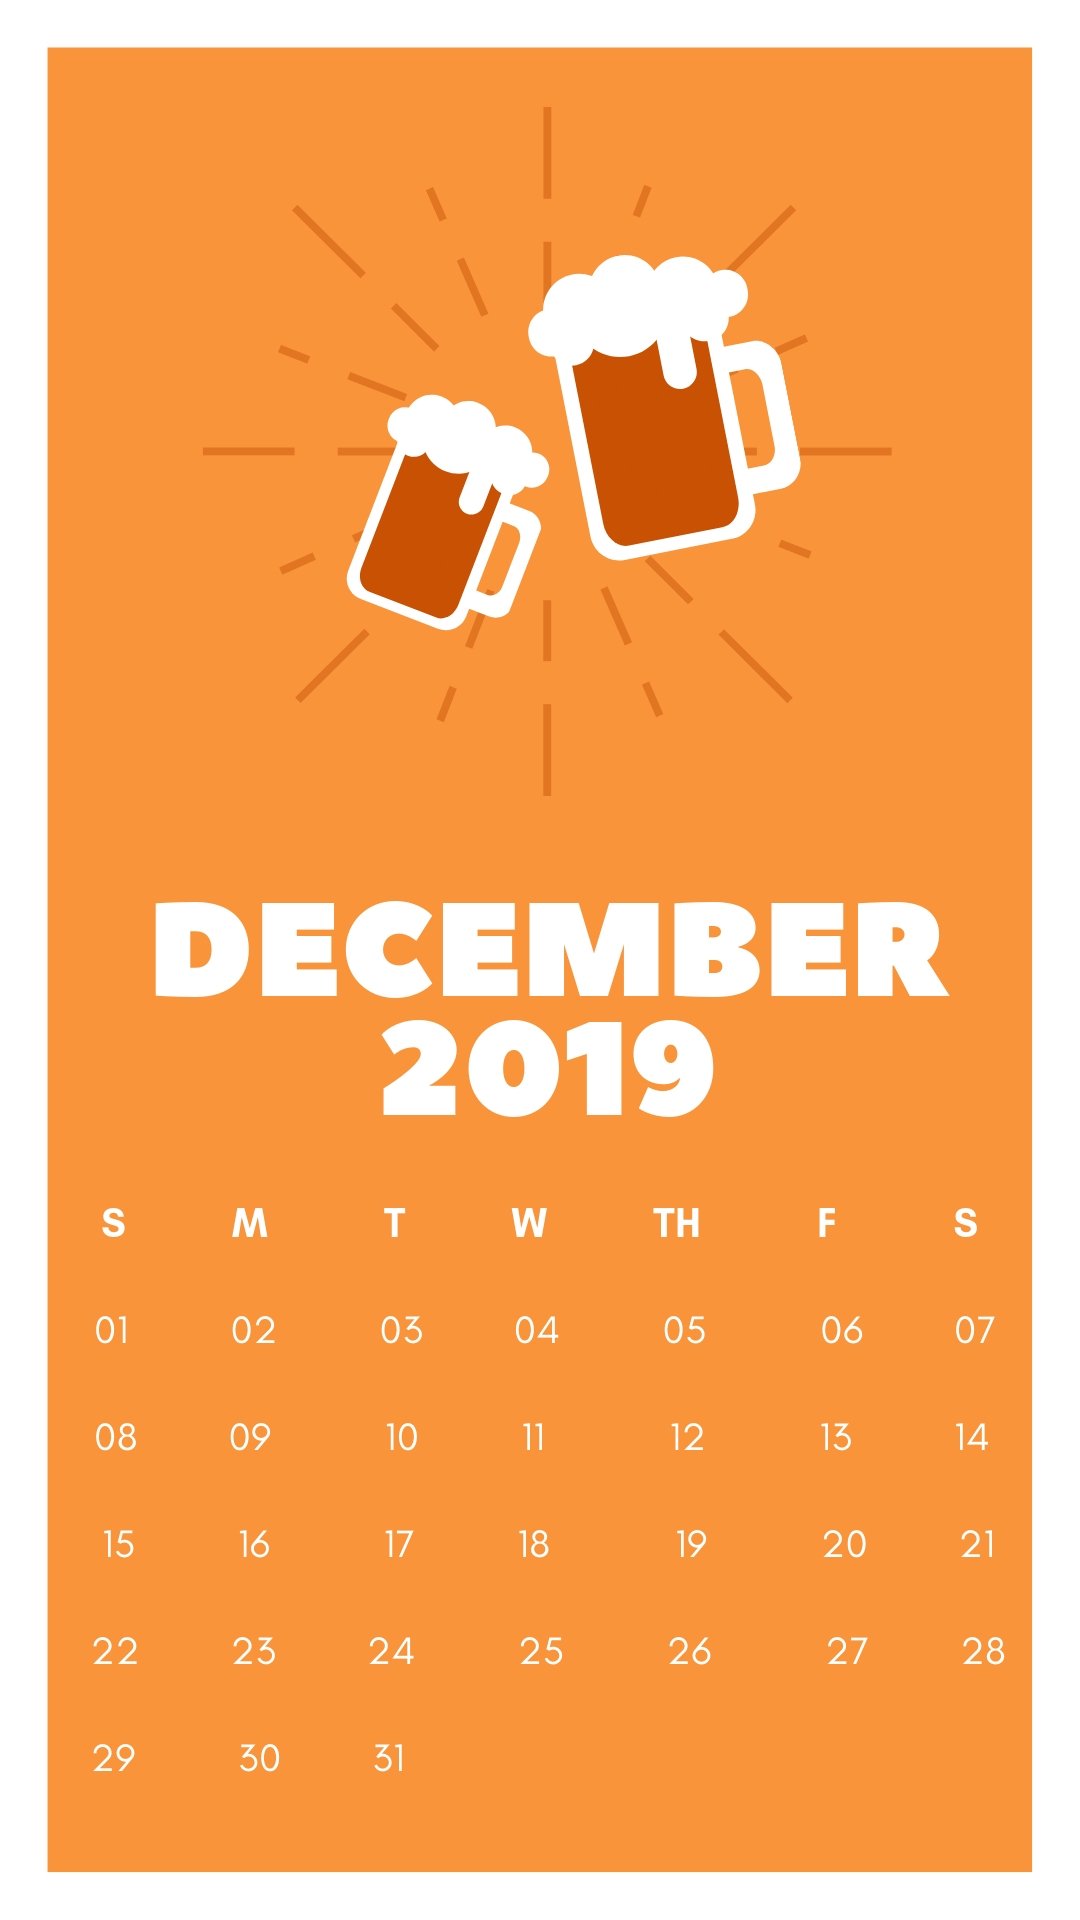 December 2019 Iphone Calendar - Calendar December 2019 Orange - HD Wallpaper 